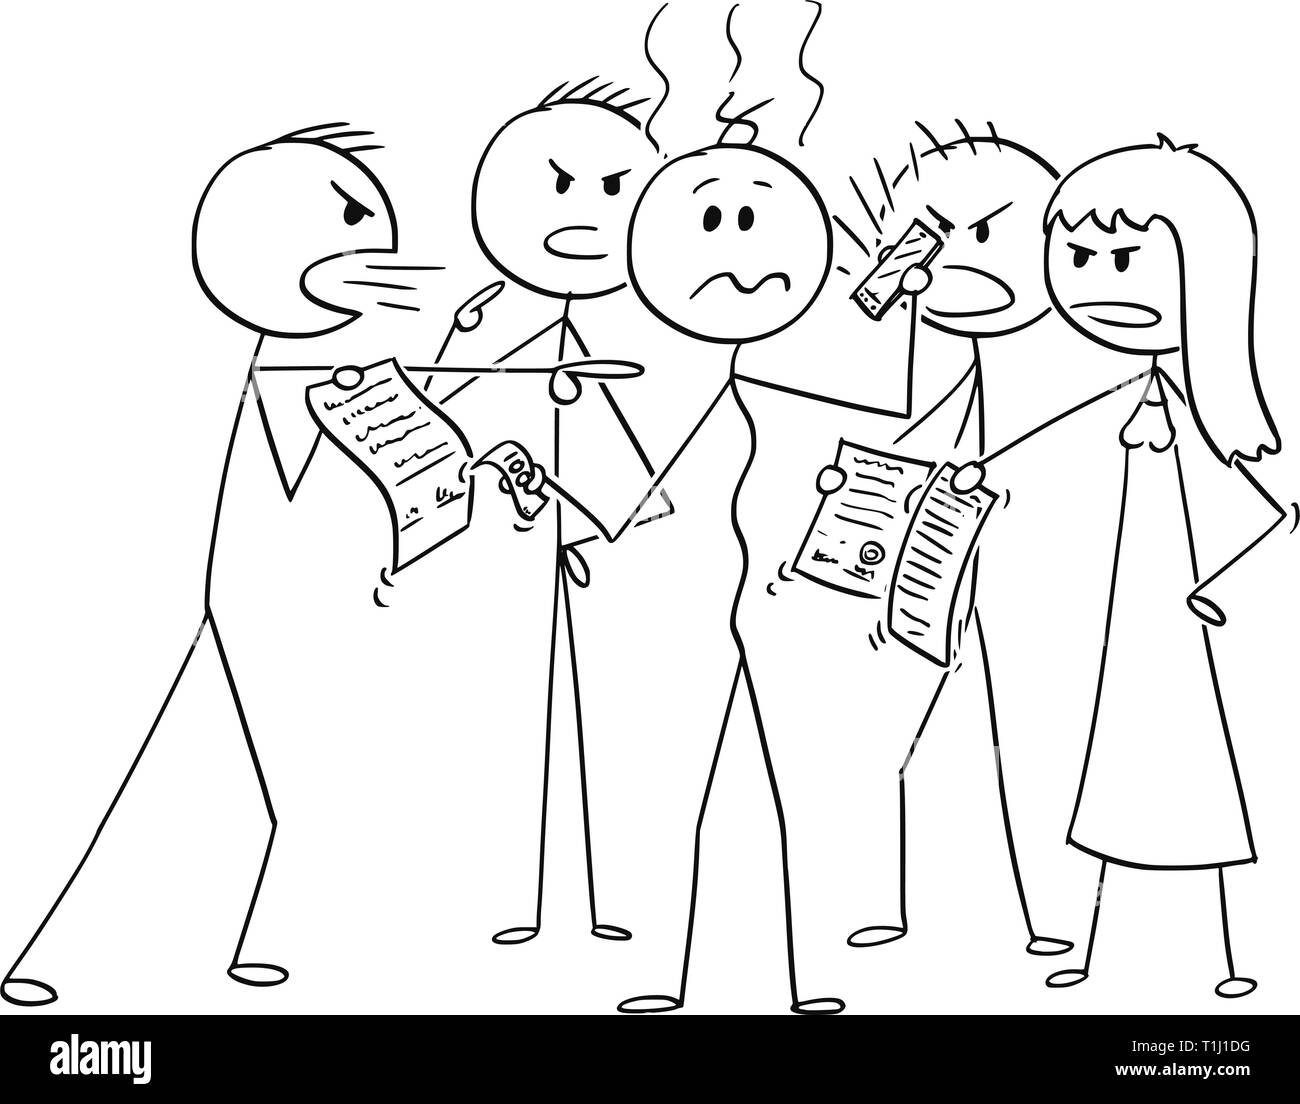 Cartoon stick figura disegno illustrazione concettuale della depressione dell'uomo in debiti circondato da un gruppo di debitori chiedendo soldi ritorno. Concetto di responsabilità finanziaria. Illustrazione Vettoriale